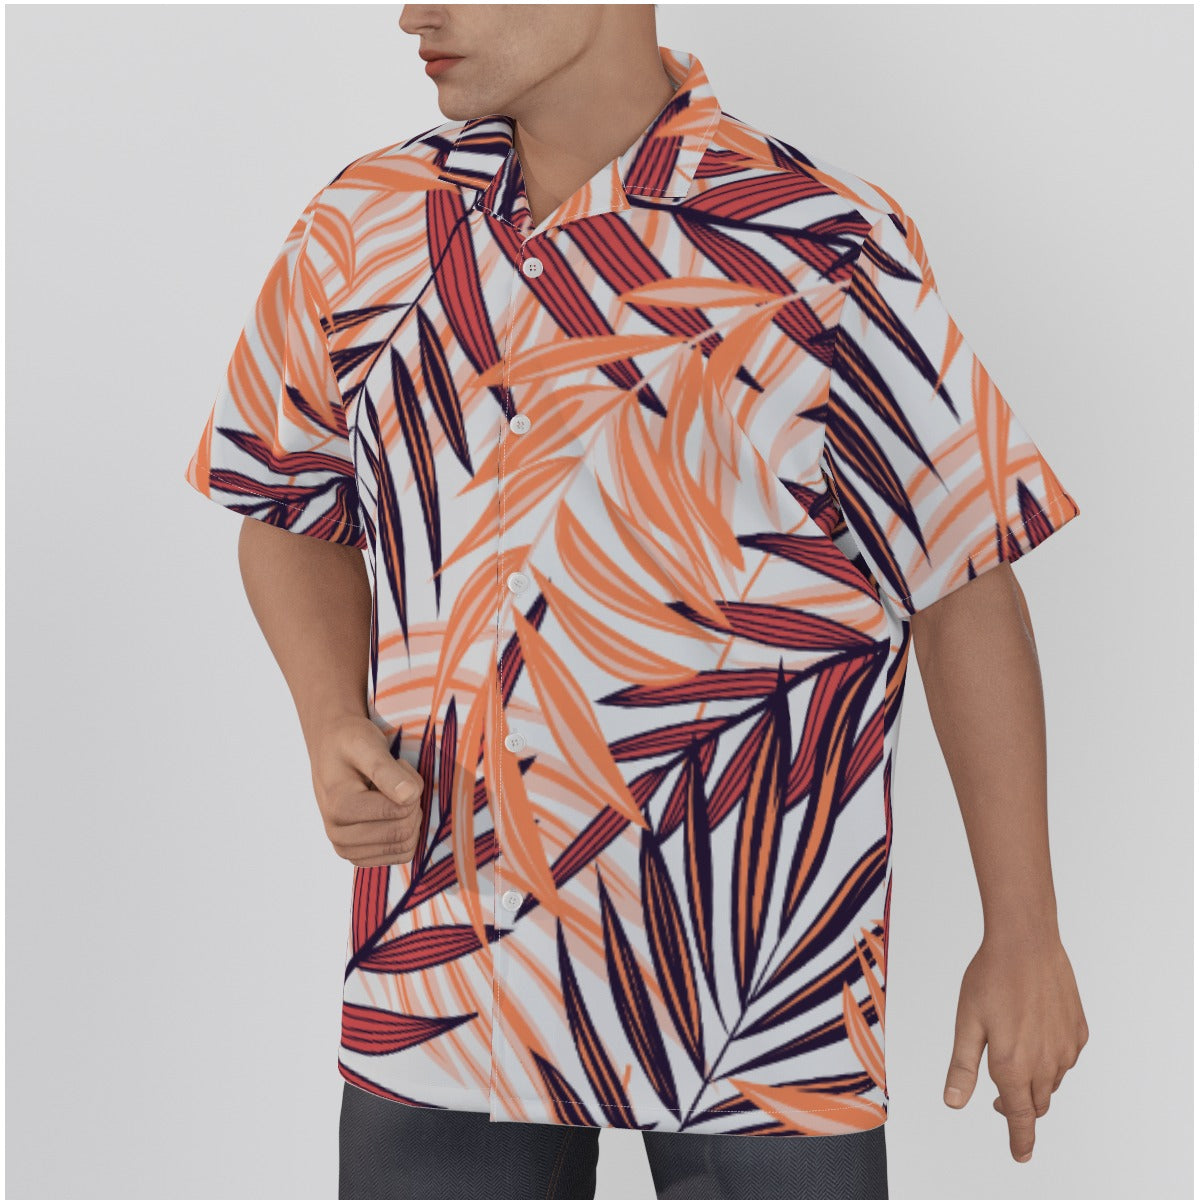 Golden Leaf Men's Beach Shirt, Cotton Hawaiian Shirt